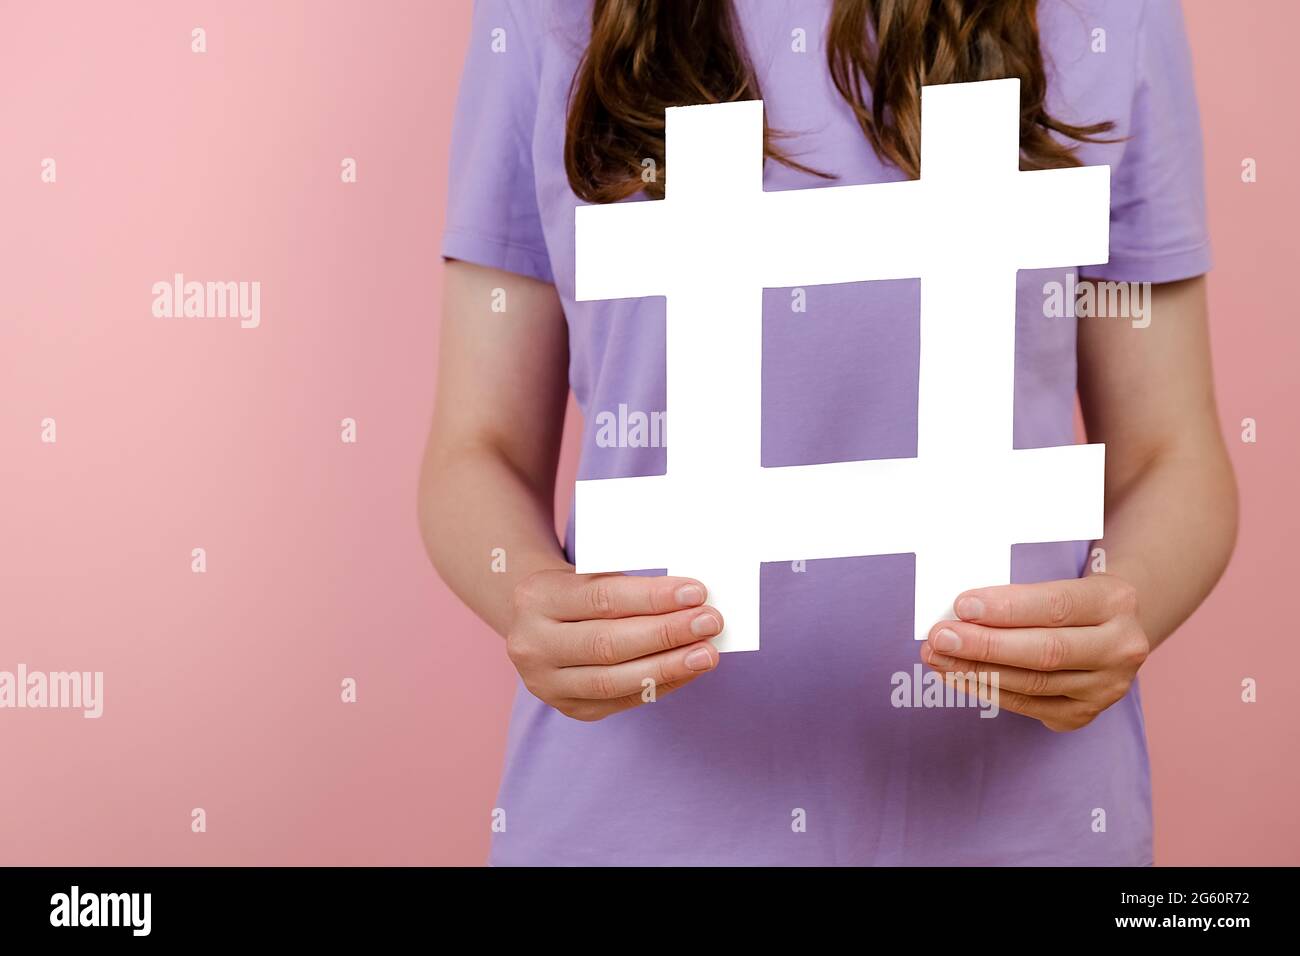 Nahaufnahme der jungen Frau hält große große große weiße Hashtag-Zeichen, Konzept der trendigen Social-Media-Beiträge und Blogging, virale Web-Inhalte, Internet-Werbung Stockfoto